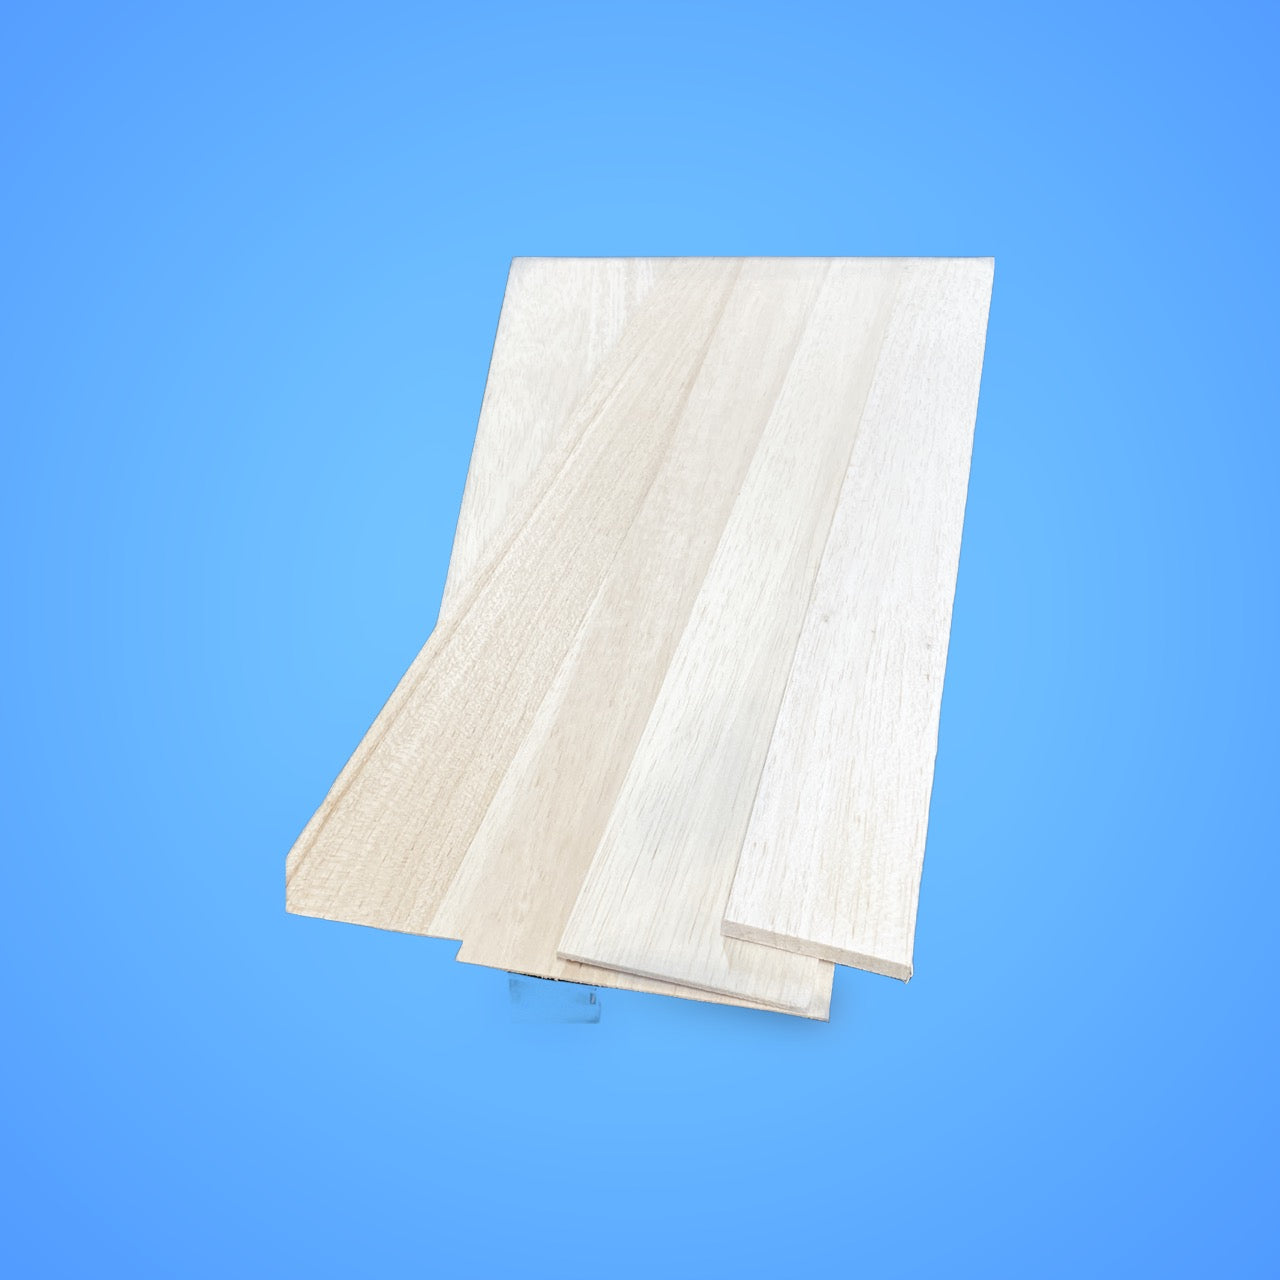 1/32 x 3 x 48 Balsa Wood Sheet